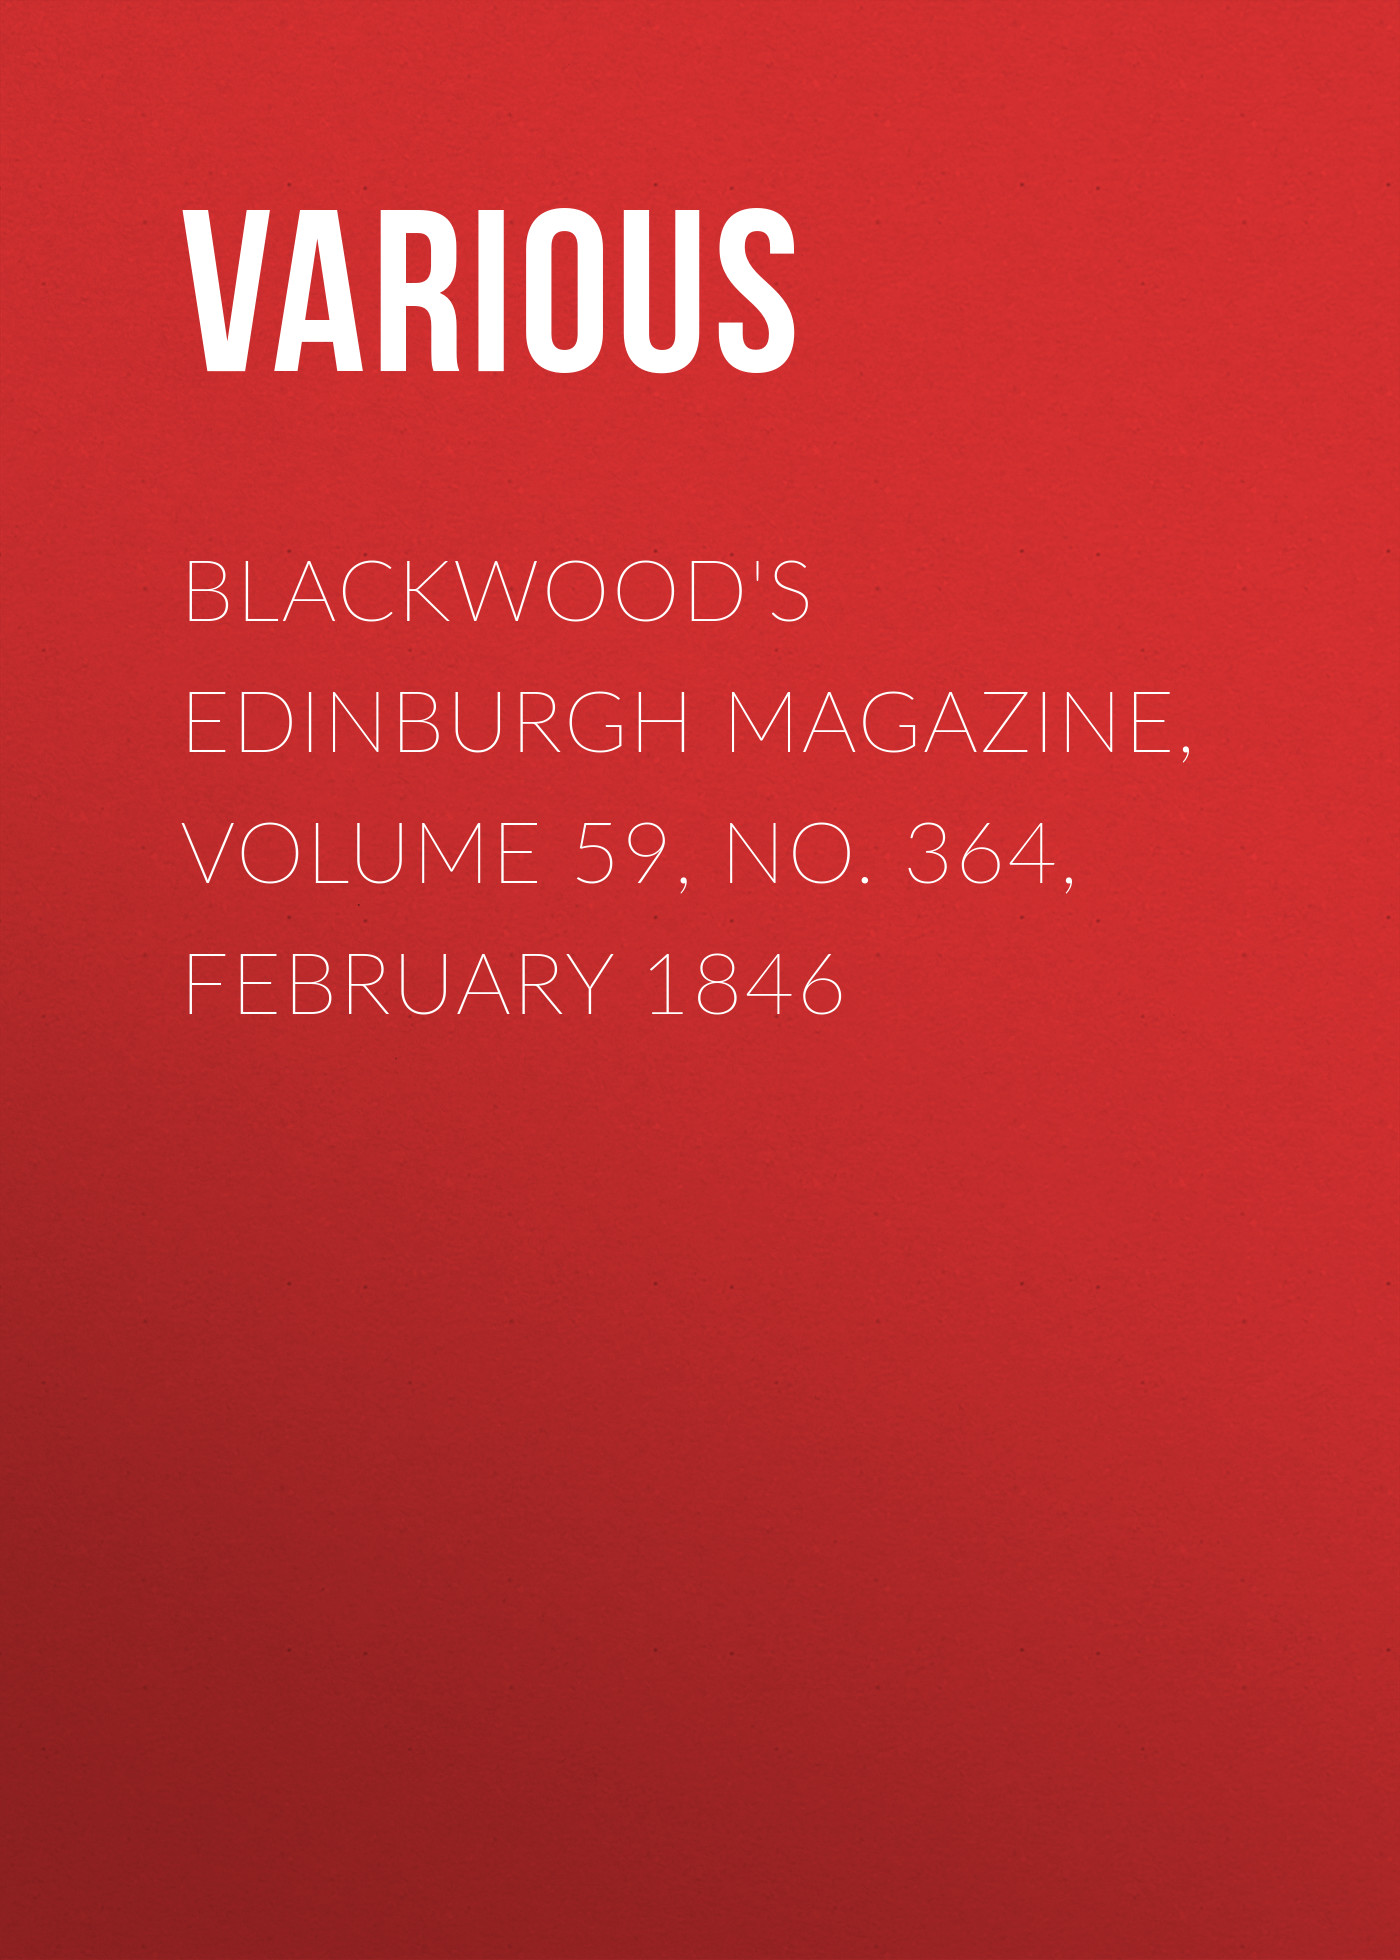 Книга Blackwood's Edinburgh Magazine, Volume 59, No. 364, February 1846 из серии , созданная  Various, может относится к жанру Журналы, Зарубежная образовательная литература, Книги о Путешествиях. Стоимость электронной книги Blackwood's Edinburgh Magazine, Volume 59, No. 364, February 1846 с идентификатором 25570967 составляет 0 руб.